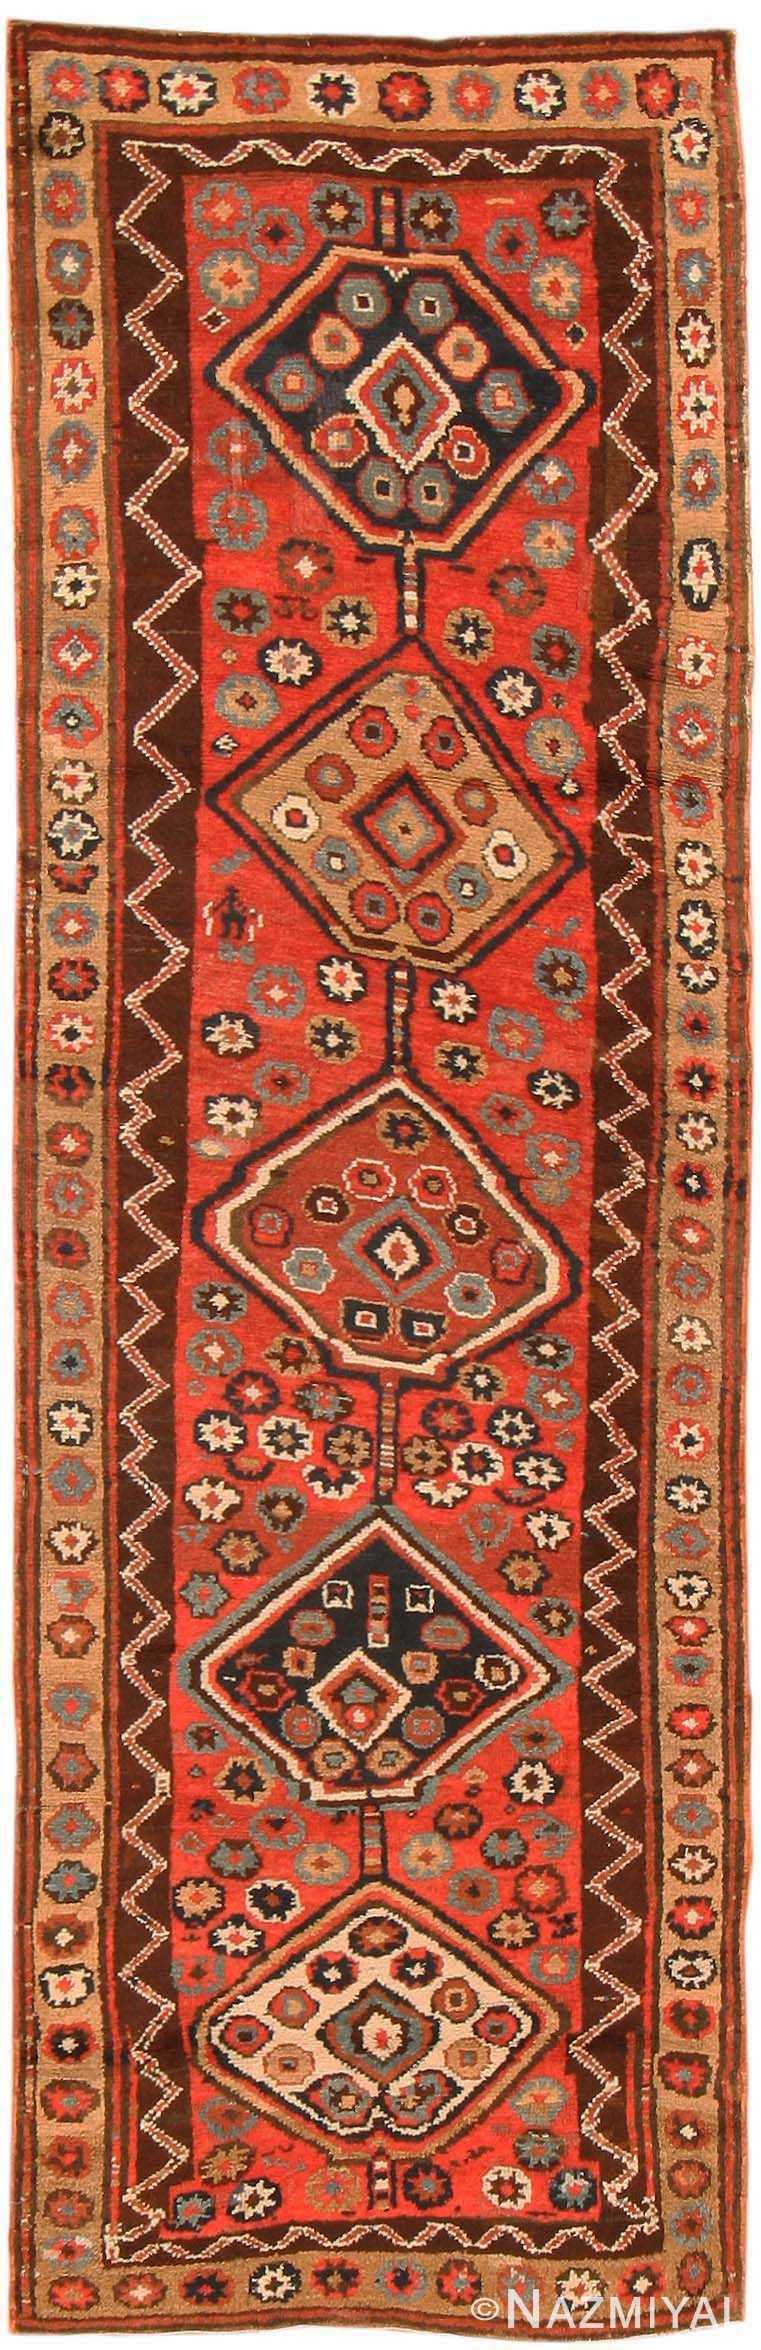 Antique Kurdish Persian Rugs 42215 Detail/Large View